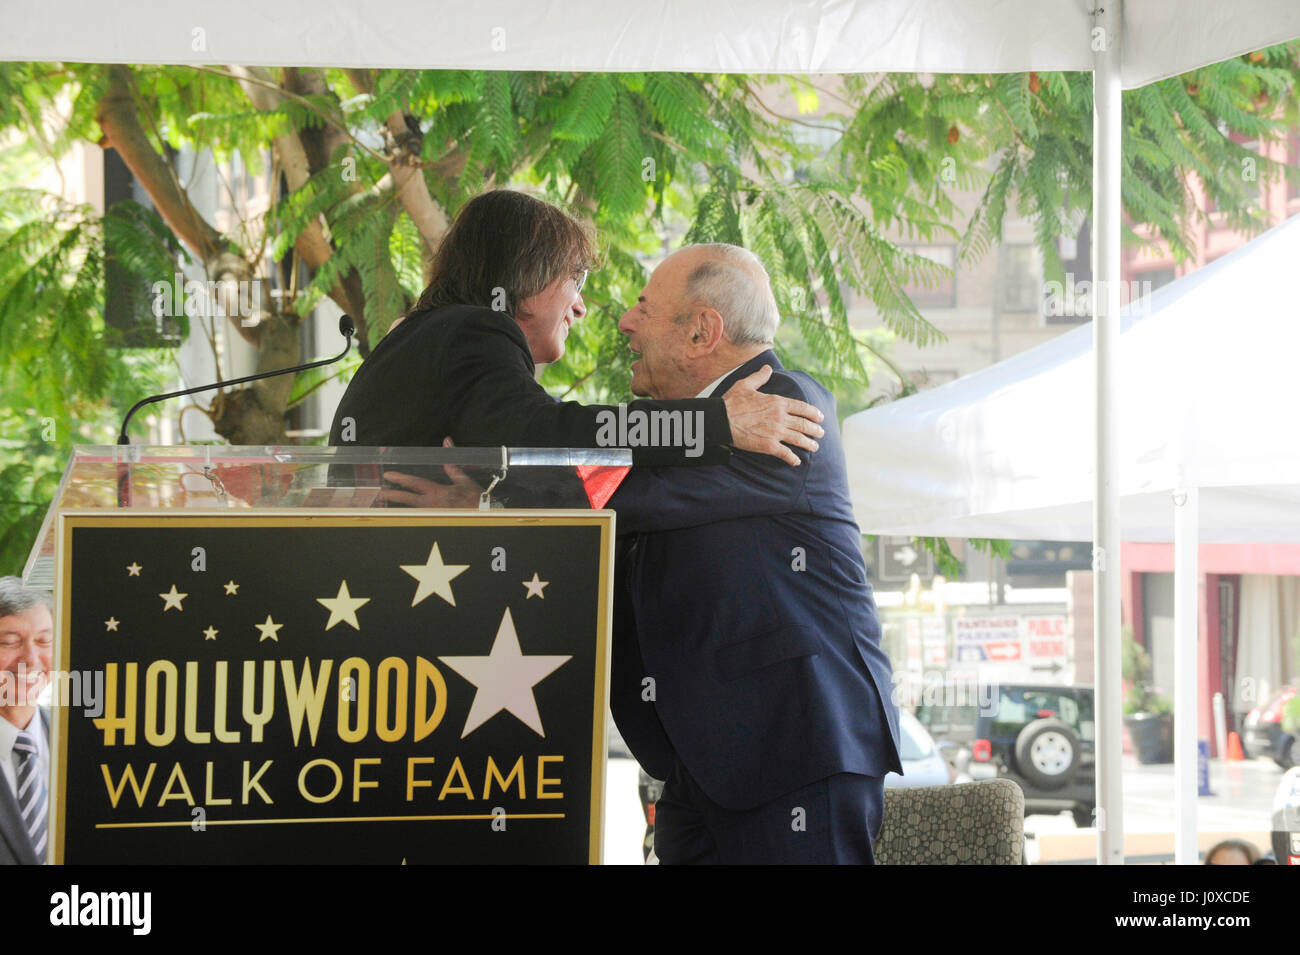 Jackson Browne und Joe Smith (r) besuchen die Hollywood Walk of Fame 2,558th Sterne Zeremonie für Musik-Manager Joe Smith außerhalb Capitol Records am 27. August 2015 in Hollywood, Kalifornien. Stockfoto